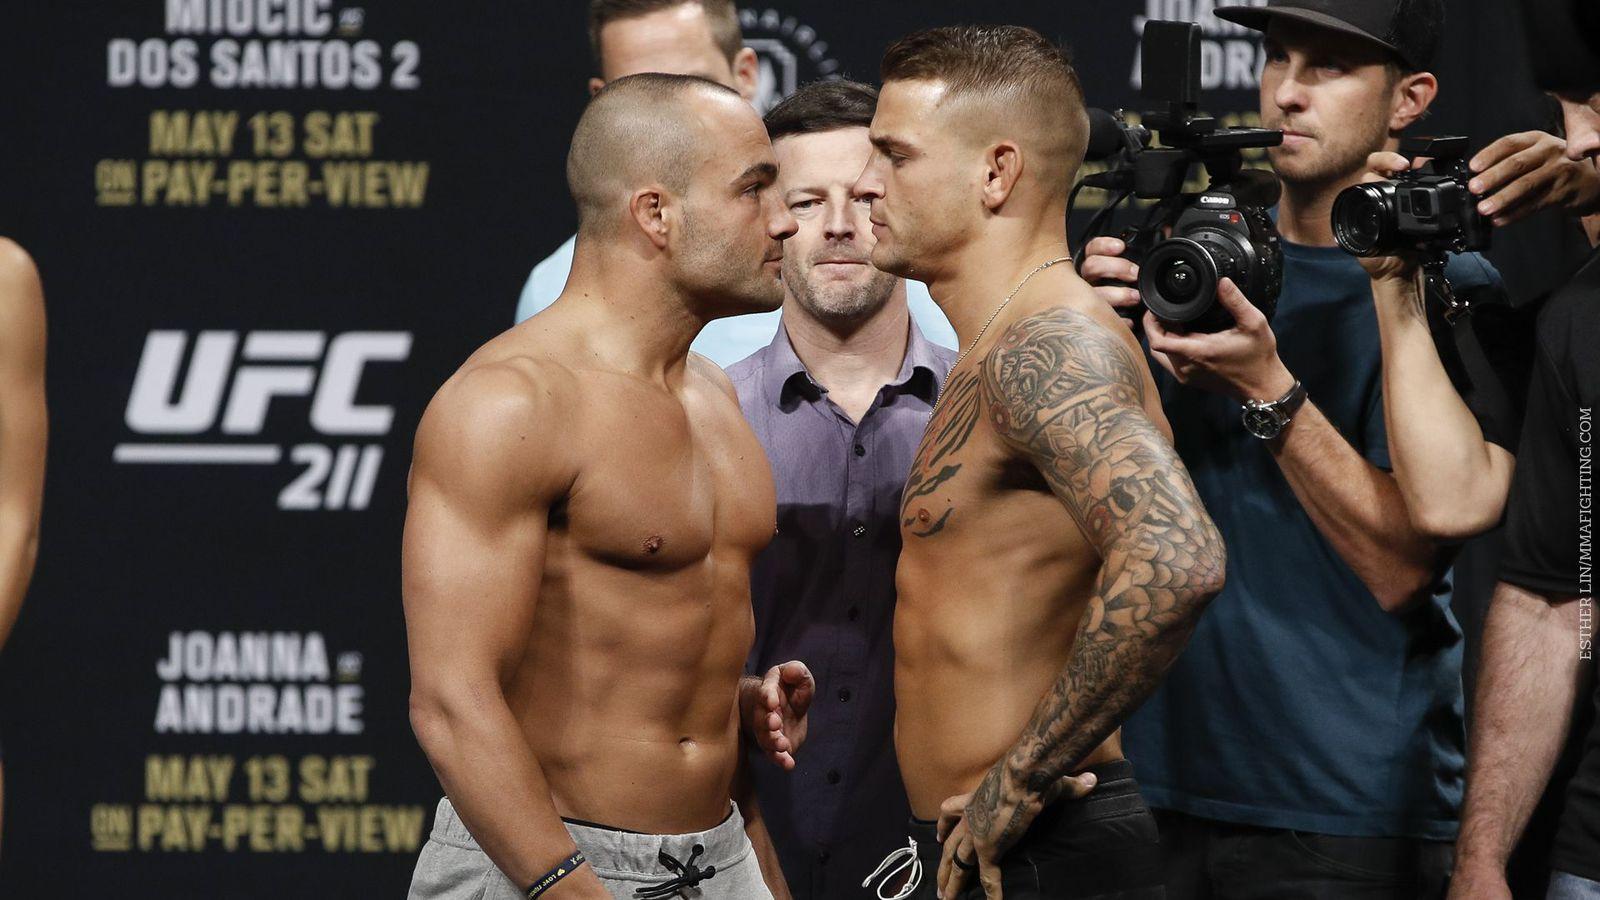 UFC 211 live blog: Eddie Alvarez vs. Dustin Poirier